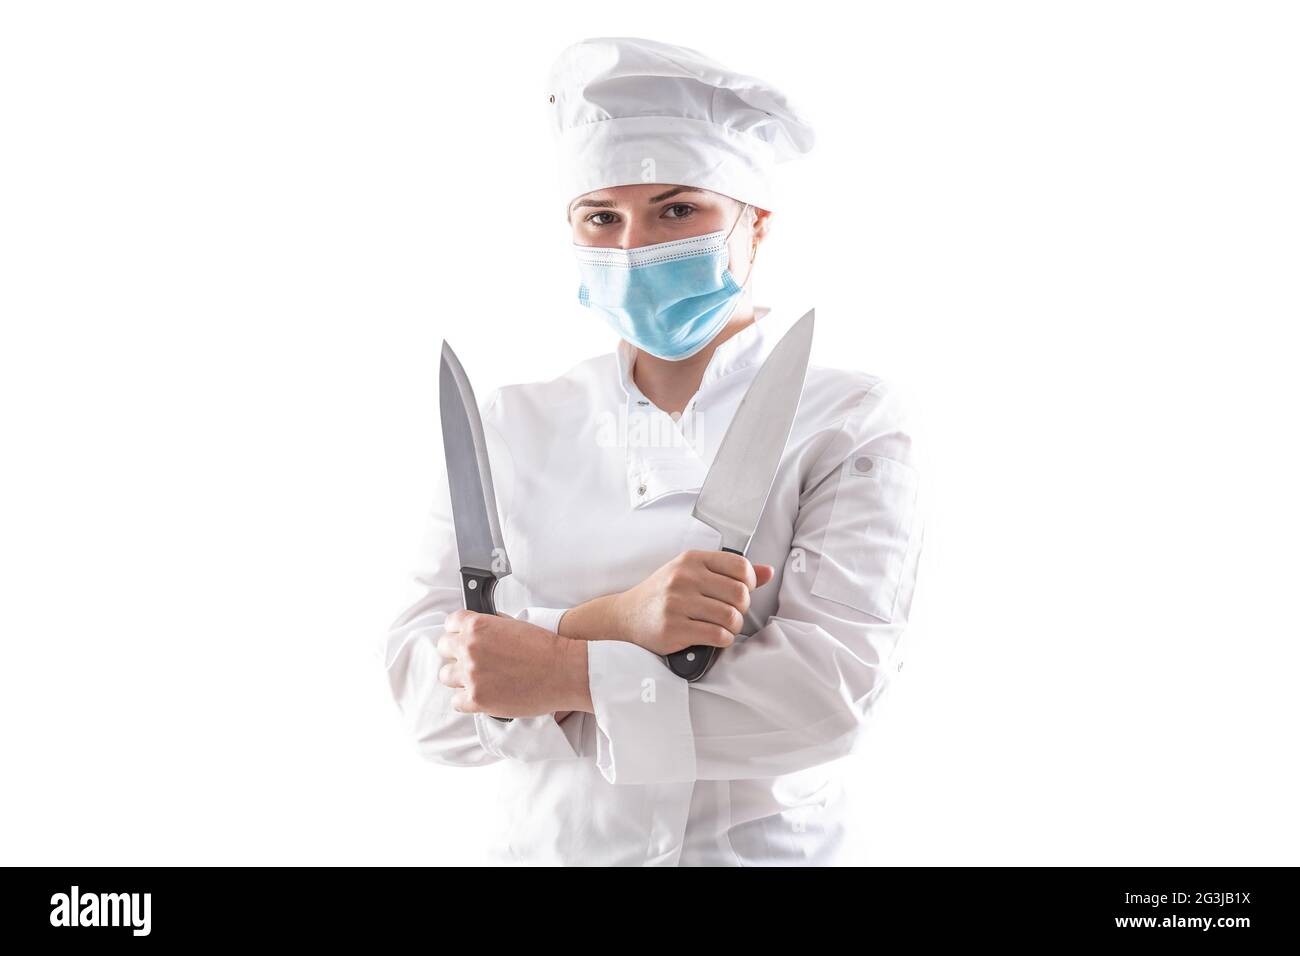 Isolierter Koch mit Maske aufgrund einer Pandemie, der in einem weißen Kochmantel mit gekreuzten Händen und zwei scharfen Messern steht. Stockfoto